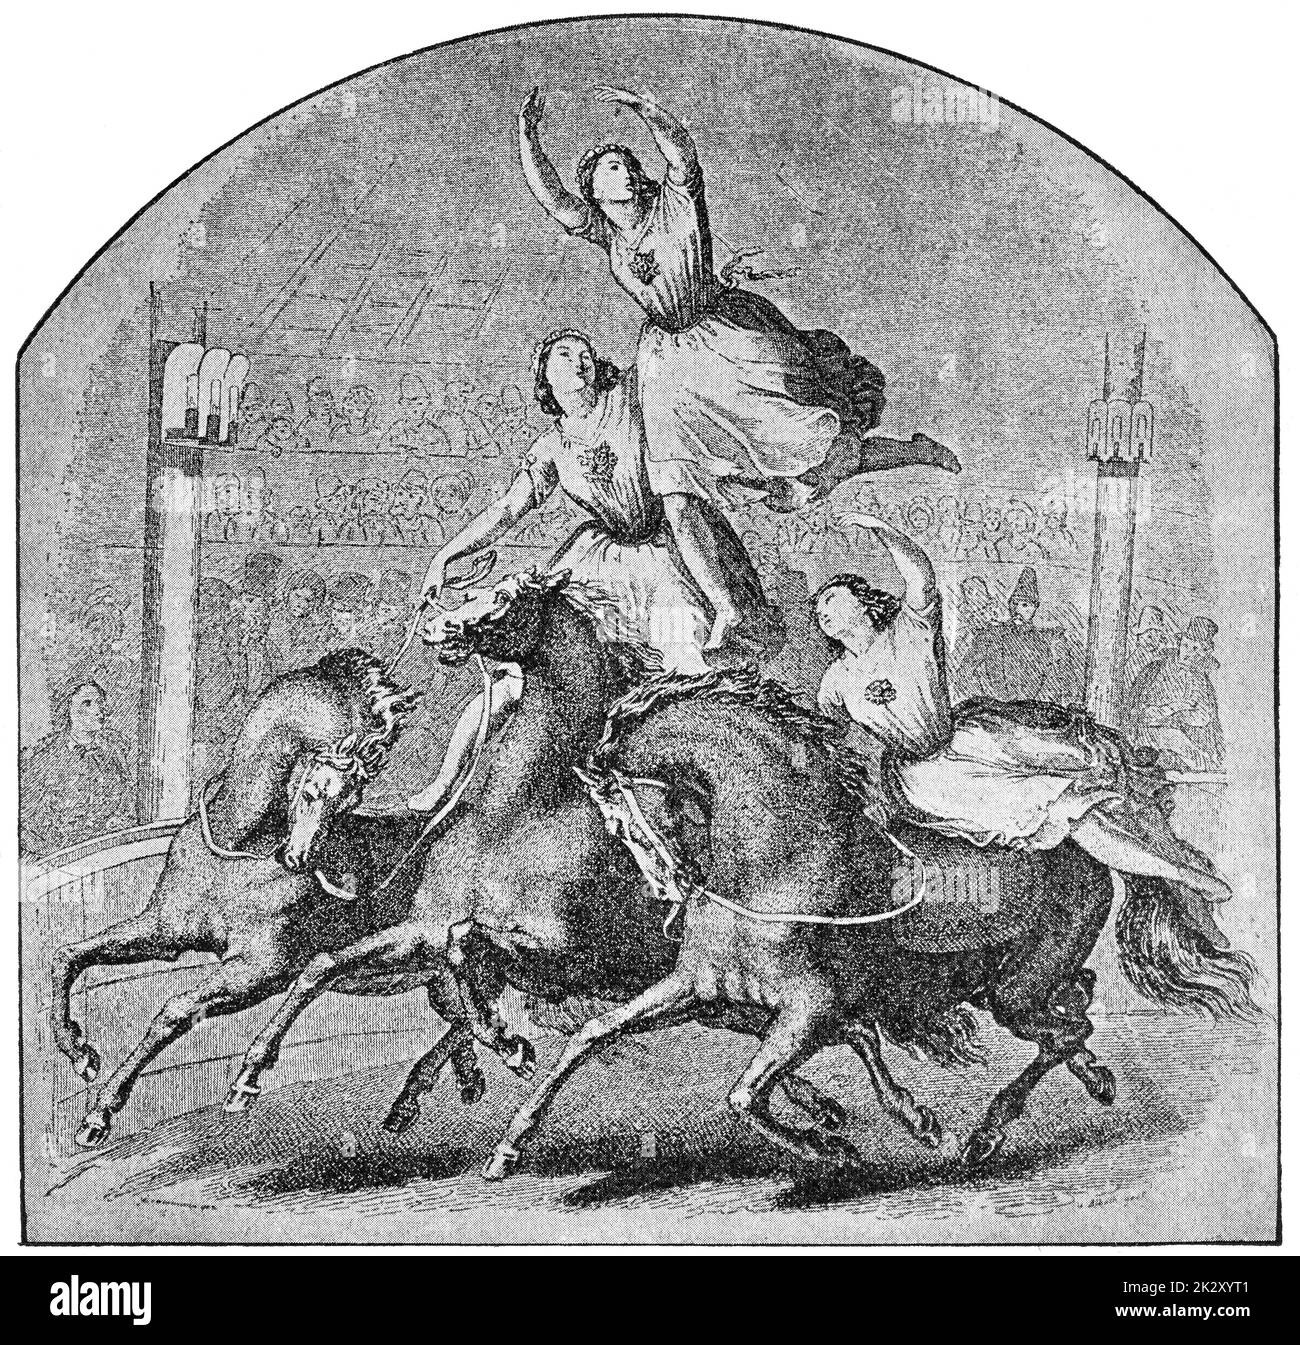 El Cirque Olympique, conocido como el Cirque Franconi (1838) - una compañía de teatro ecuestre. Ilustración del siglo 19. Fondo blanco. Foto de stock